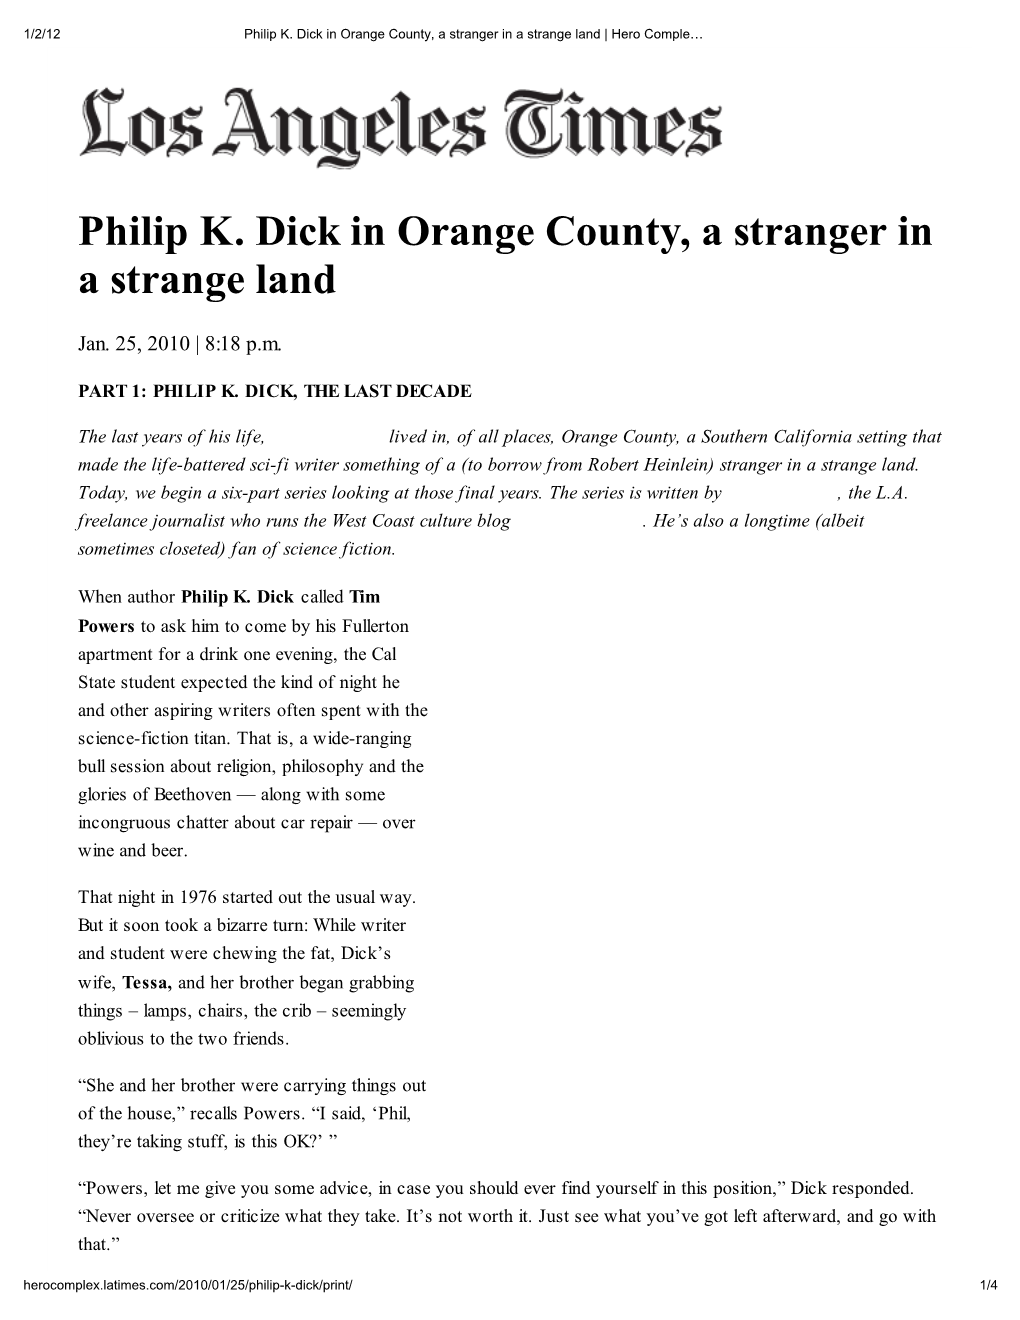 Philip K. Dick in Orange Count , a Stranger in a Strange Land